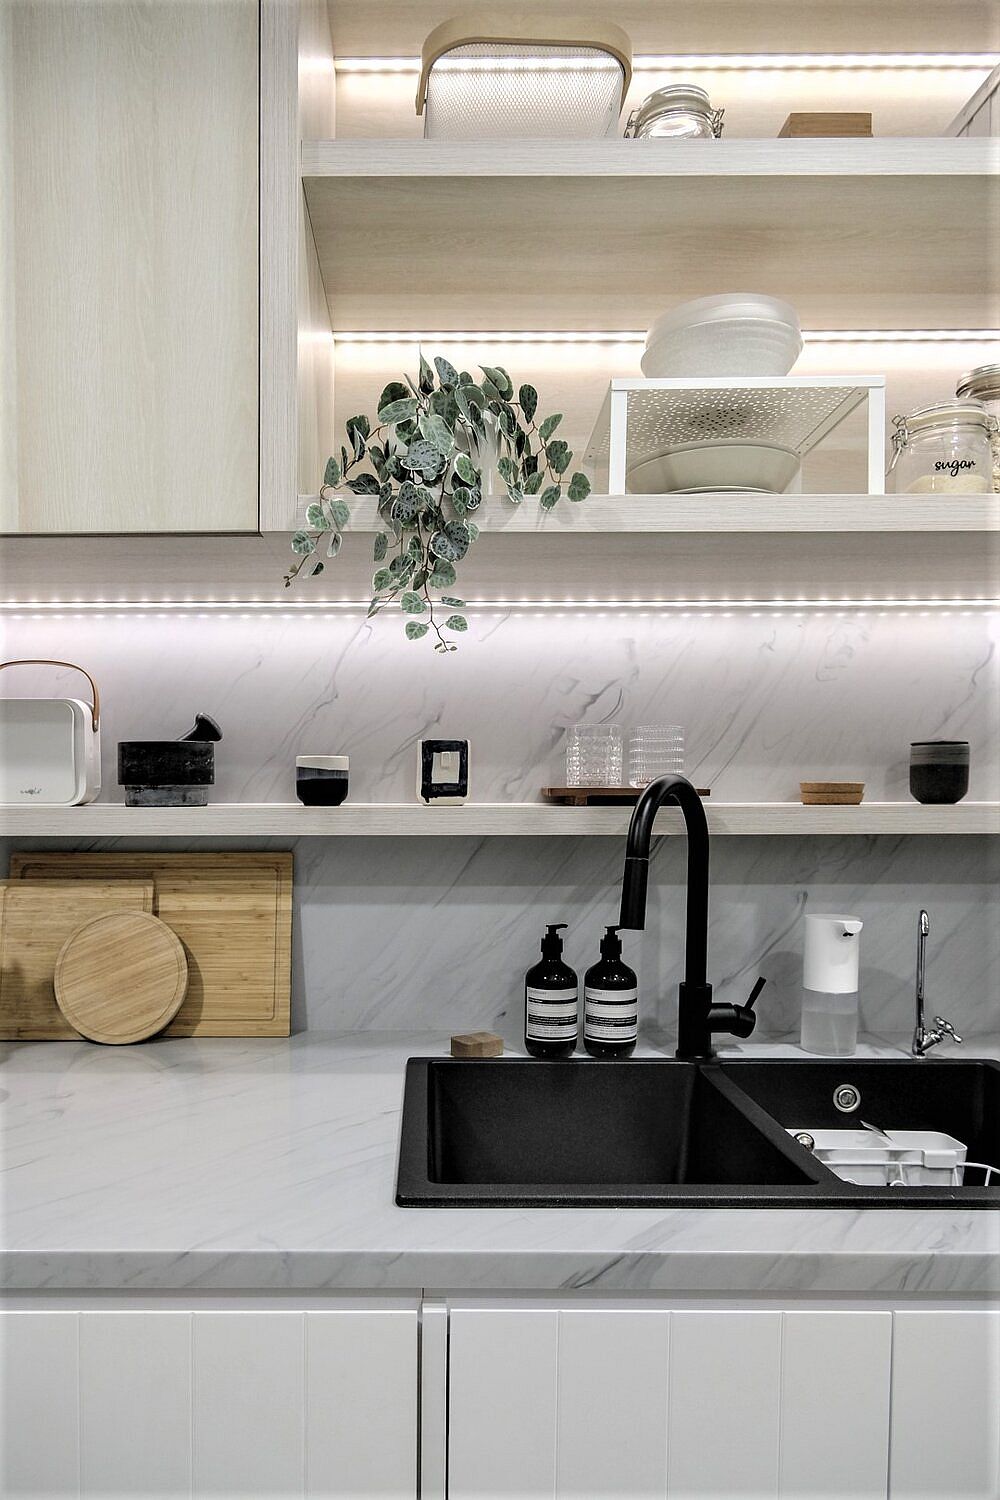 Bồn rửa màu đen cho cảm giác vững chắc và sạch sẽ. Dải đèn LED xinh xắn được bố trí chạy ngang dưới các kệ bếp vừa cung cấp ánh sáng vừa tạo sự lấp lánh bắt mắt giữa những gam màu trung tính được lựa chọn làm sắc màu chủ đạo.